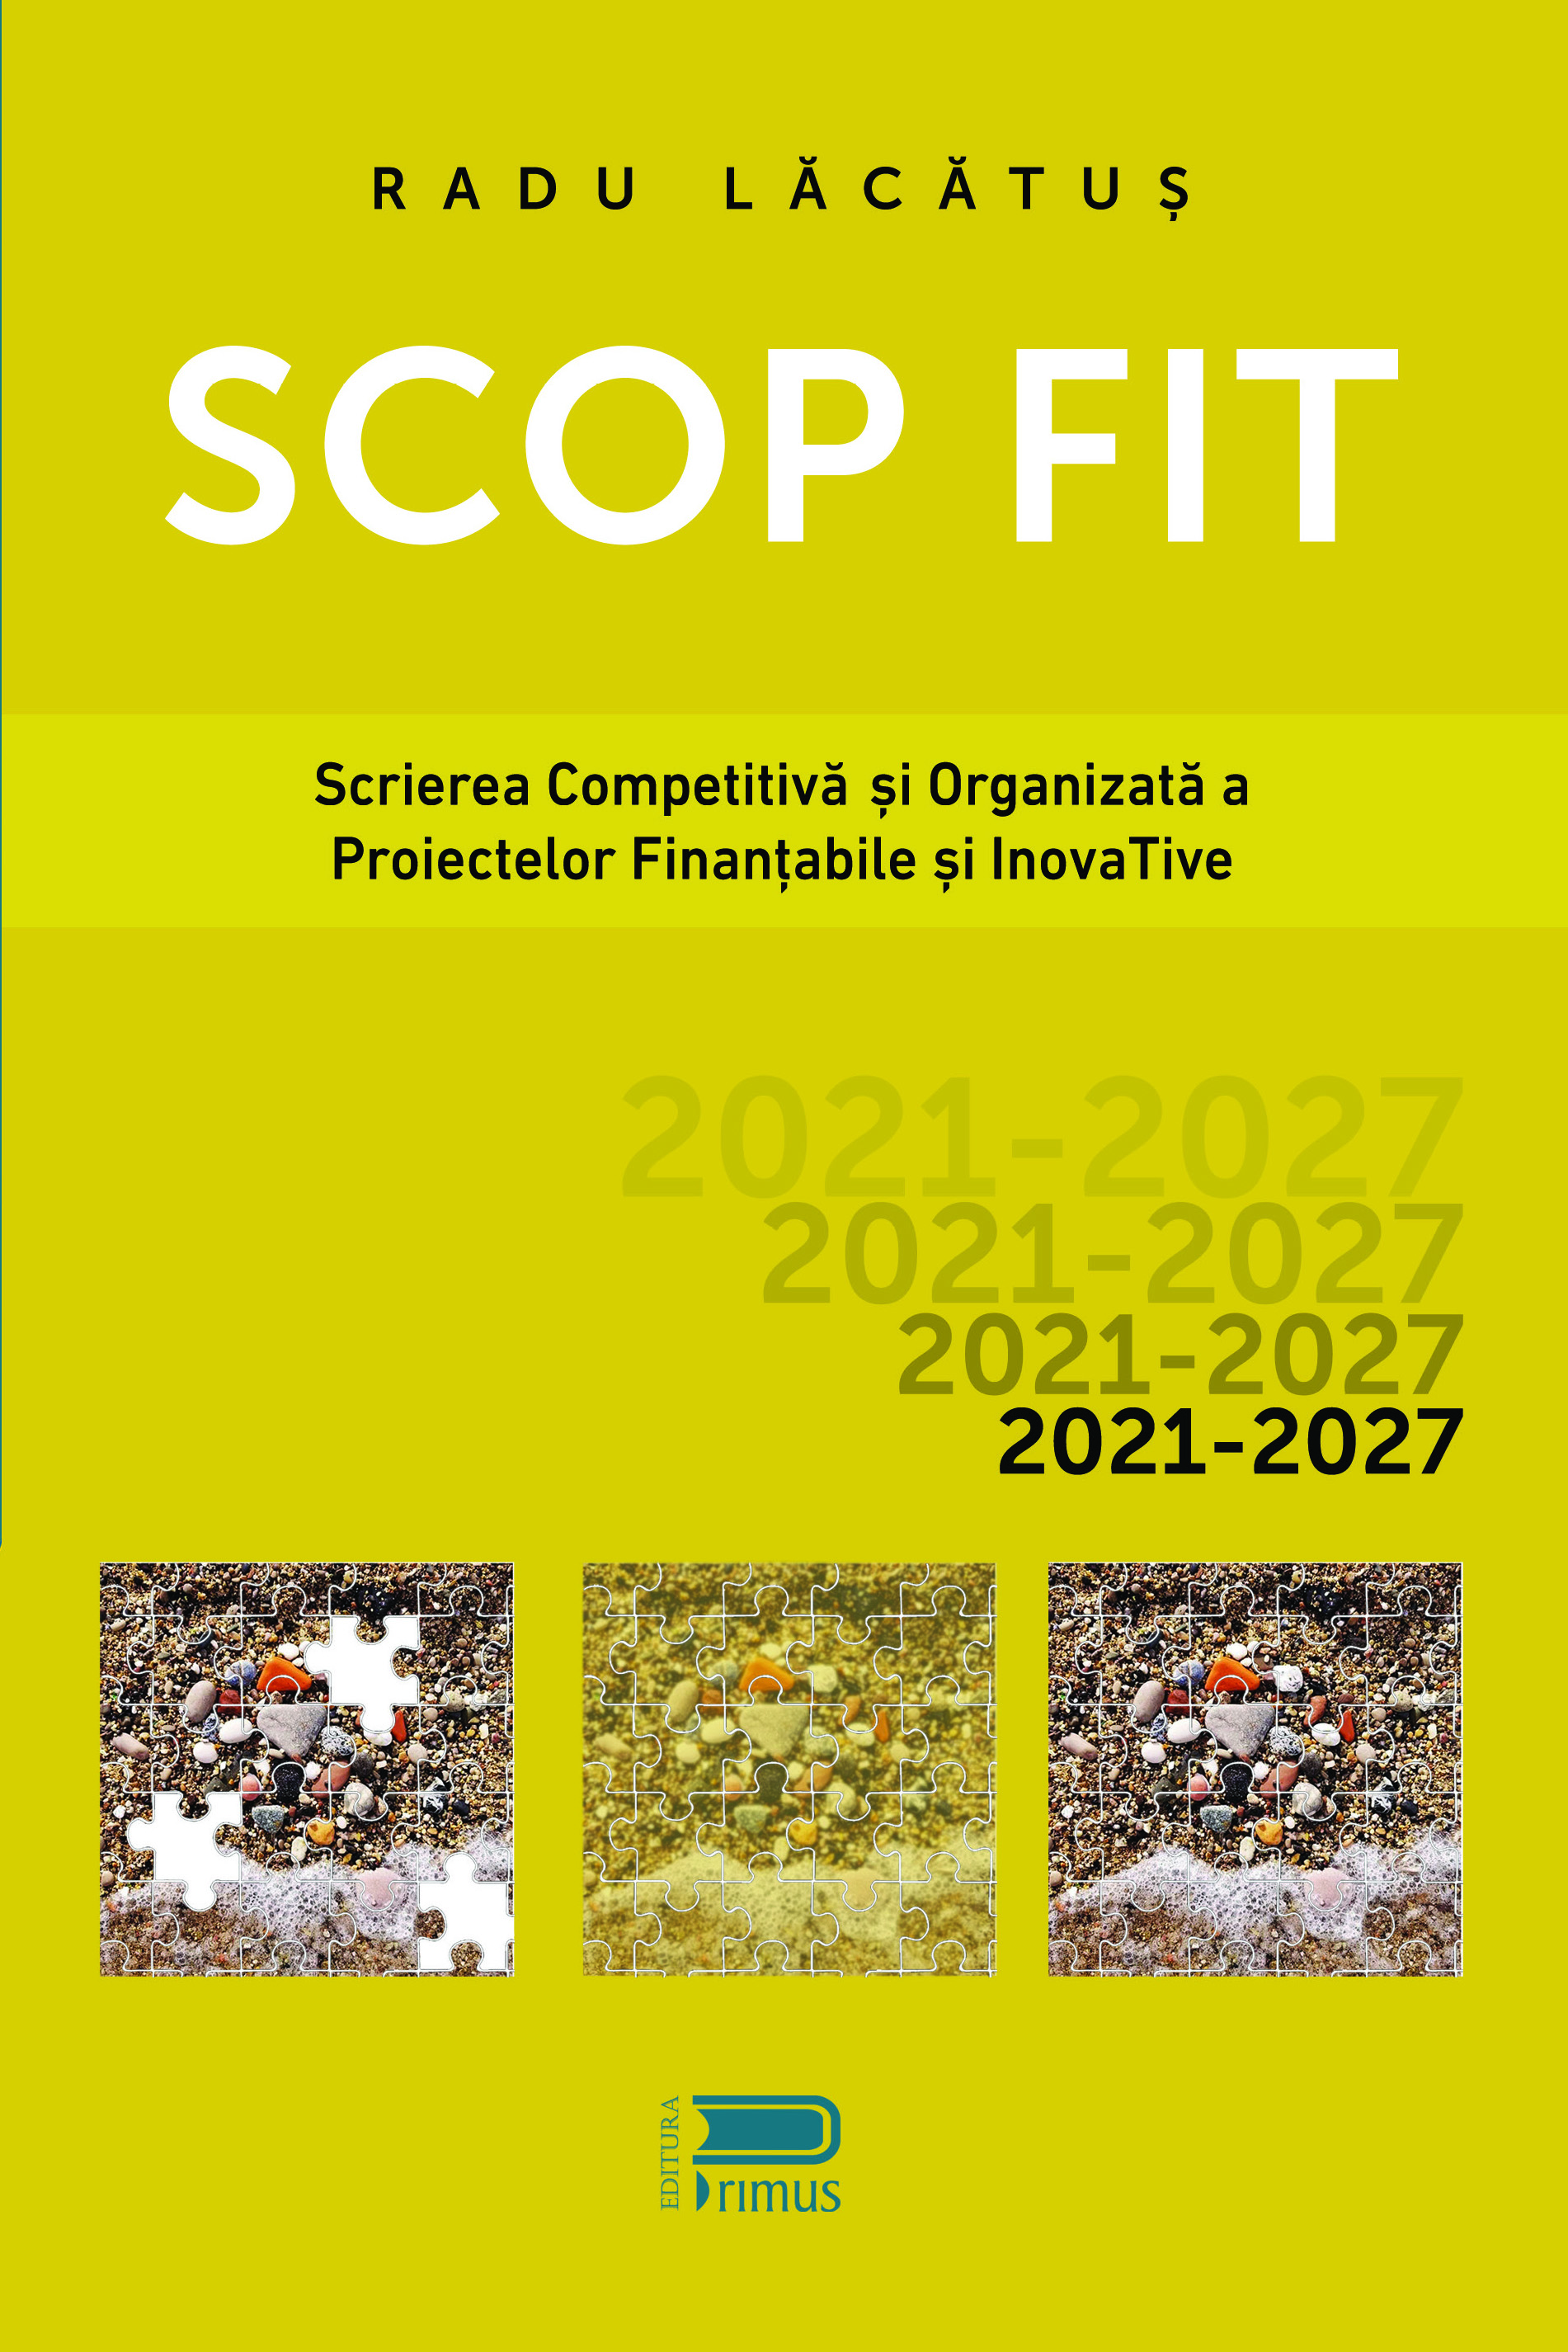 SCOP FIT: Scrierea competitiva si organizata a proiectelor finantabile si inovative | Radu Lacatus Business